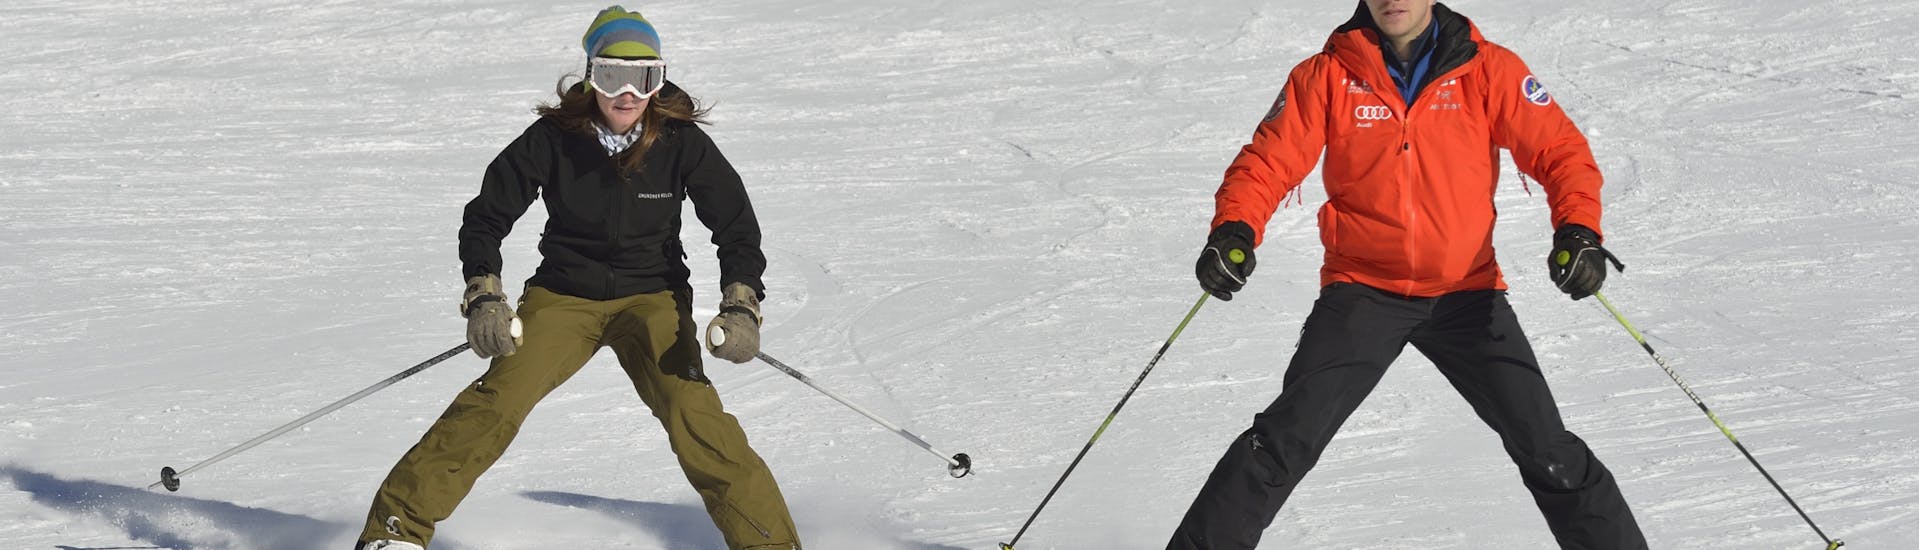 Ein Skianfänger und ein Skilehrer während dem Skikurs für Erwachsene Anfänger.